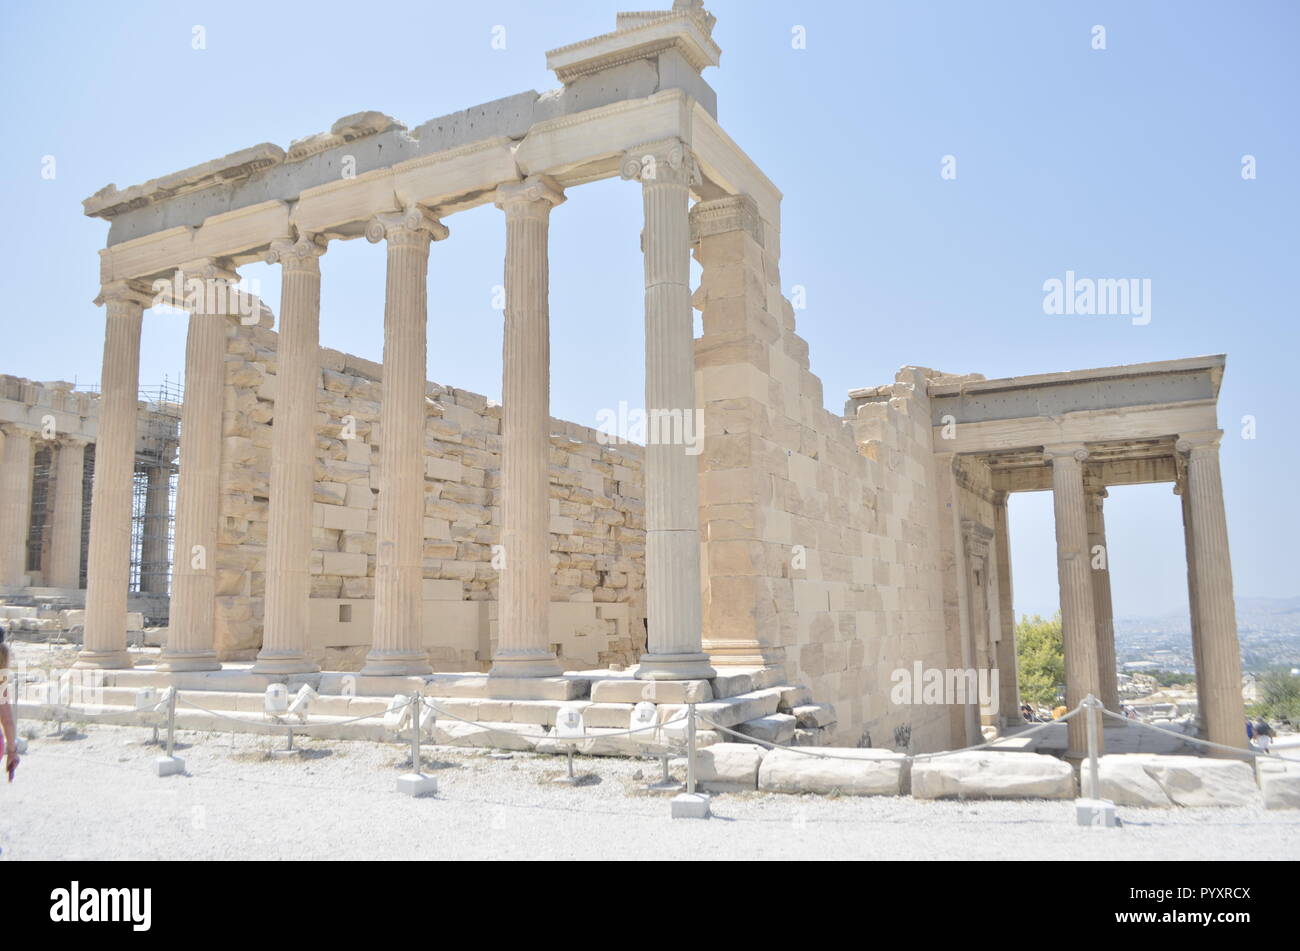 The Erechtheion temple on Acropolis, Athens Stock Photo